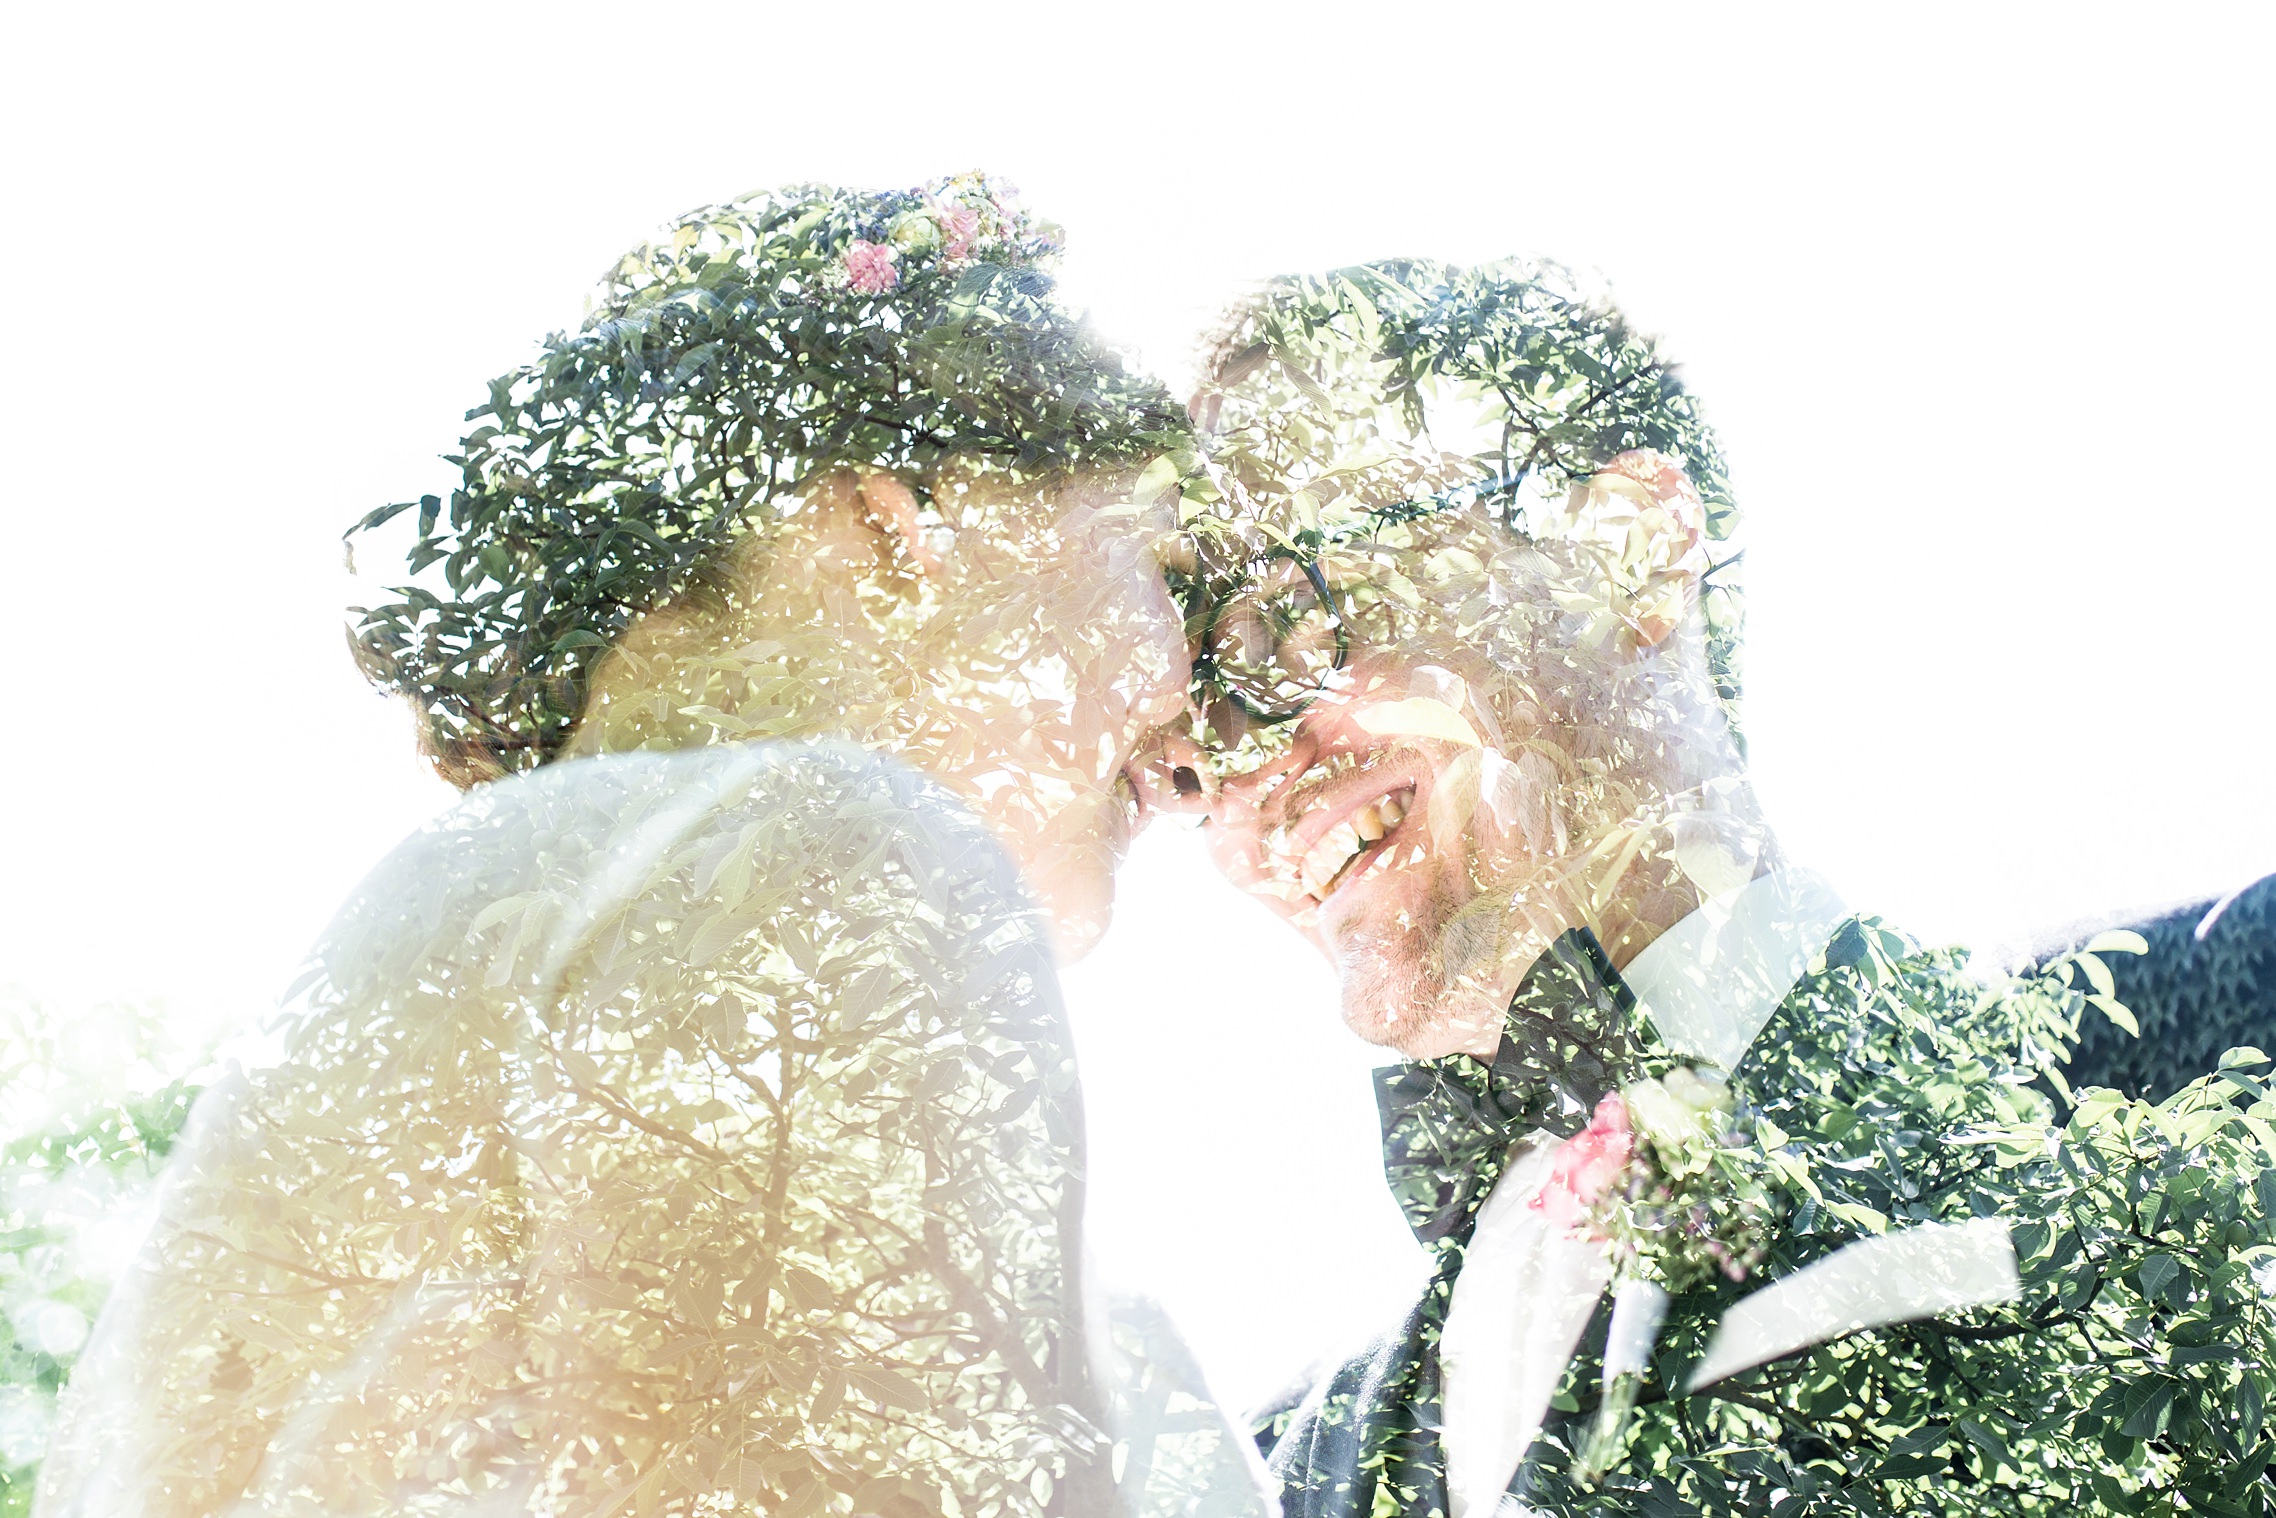 Doppelbelichtungs-Bild mit dem Brautpaar - es sind die Köpfe zusammen mit einer Baumstruktur zu sehen